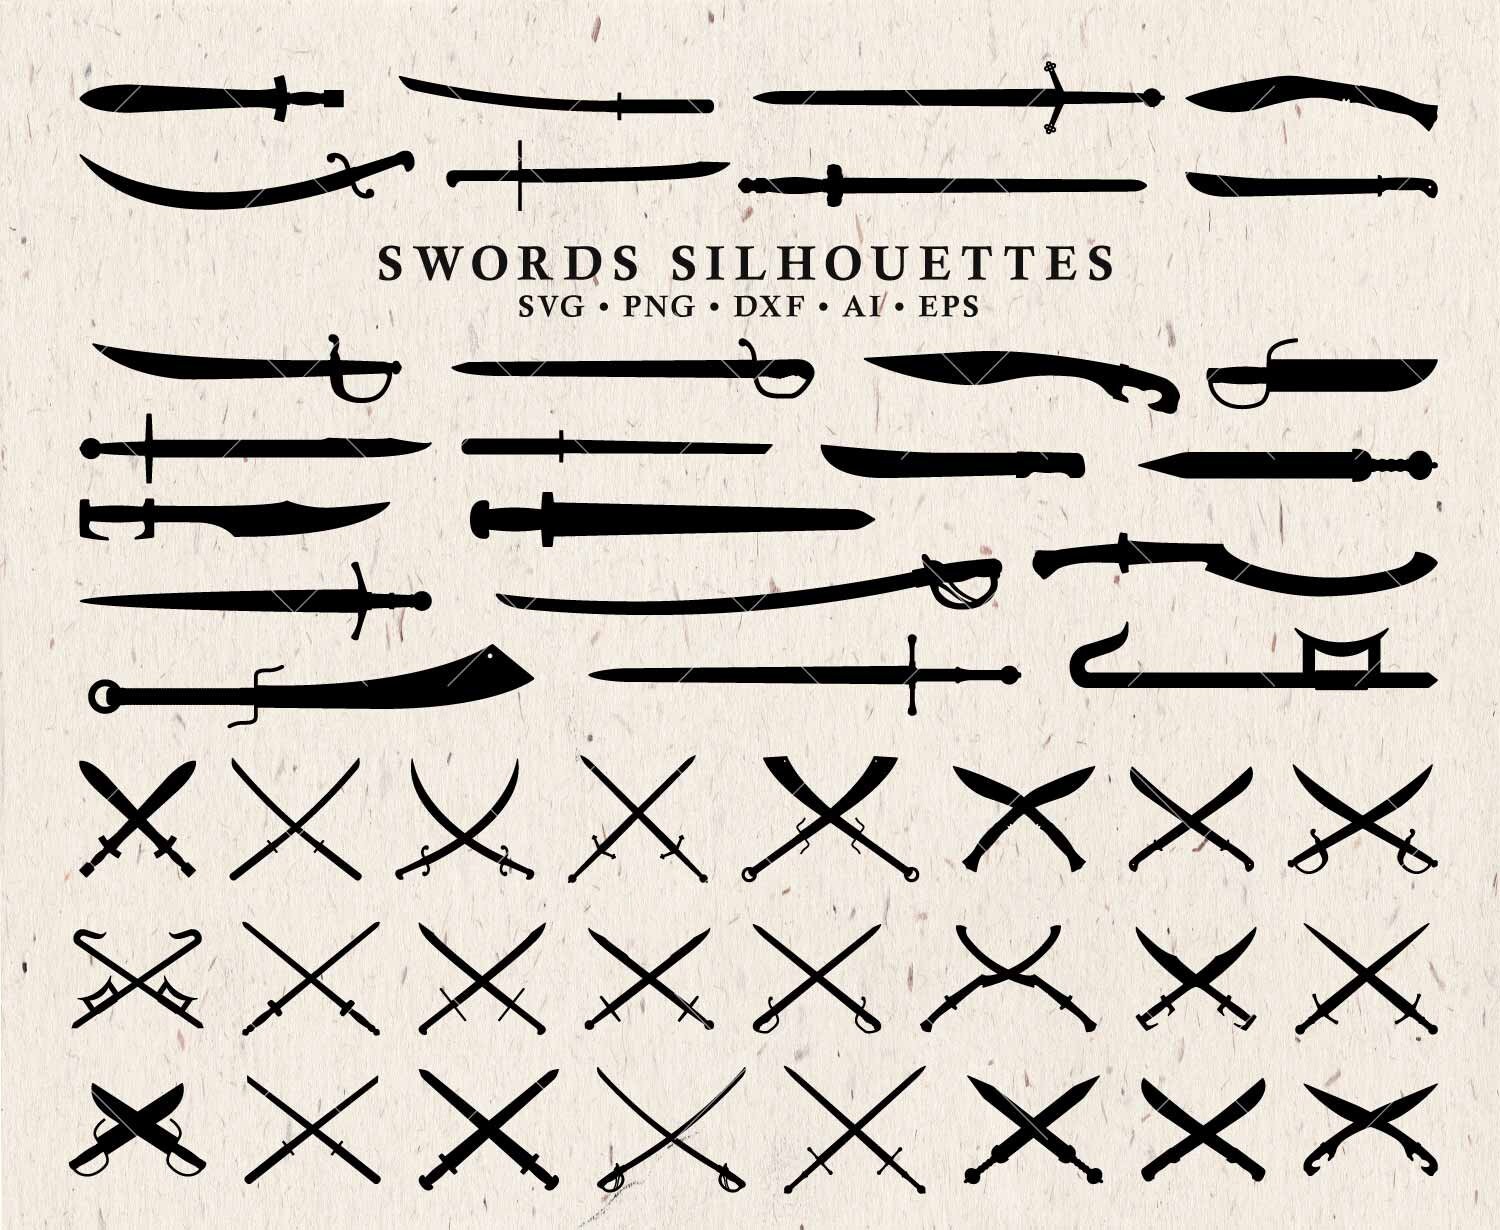 Crossed Swords Objects Sticker - Crossed Swords Objects Joypixels